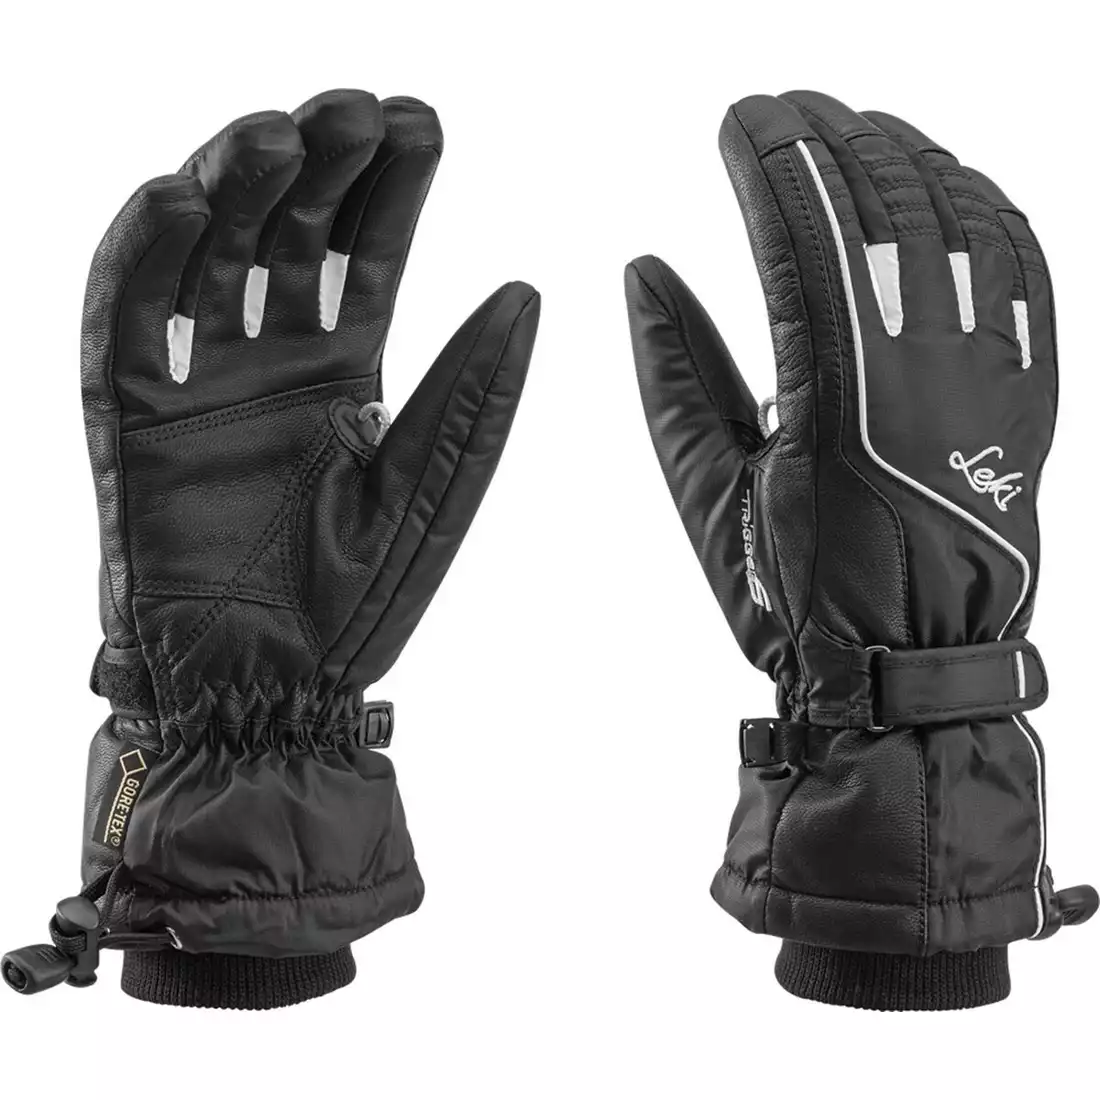 LEKI Damskie rękawiczki narciarskie Sierra S GTX Lady, black, 63487302080